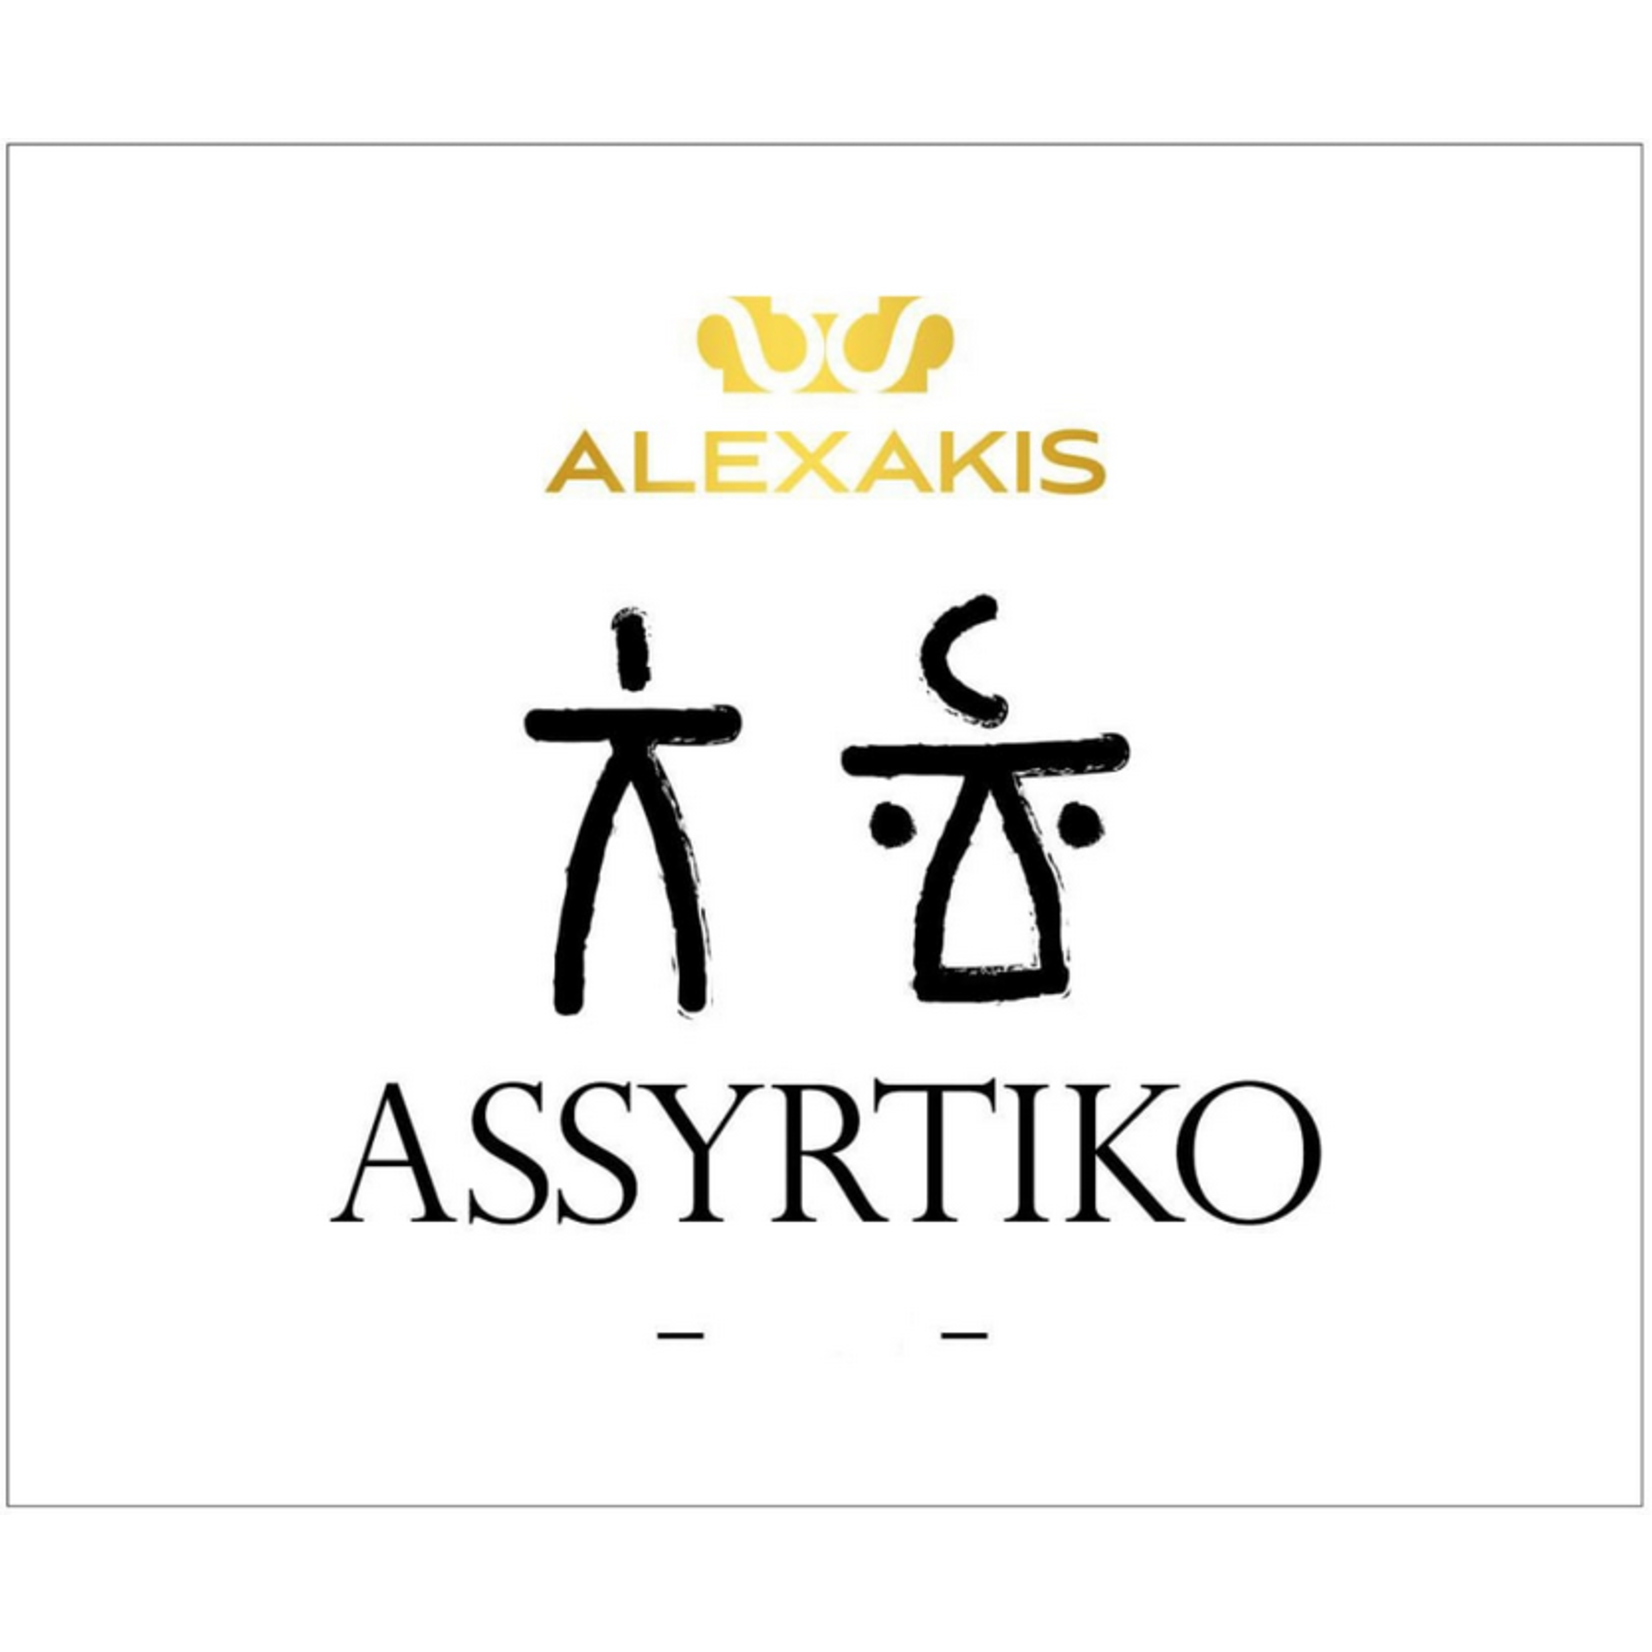 Alexakis Alexakis Assyrtiko Greece Wine